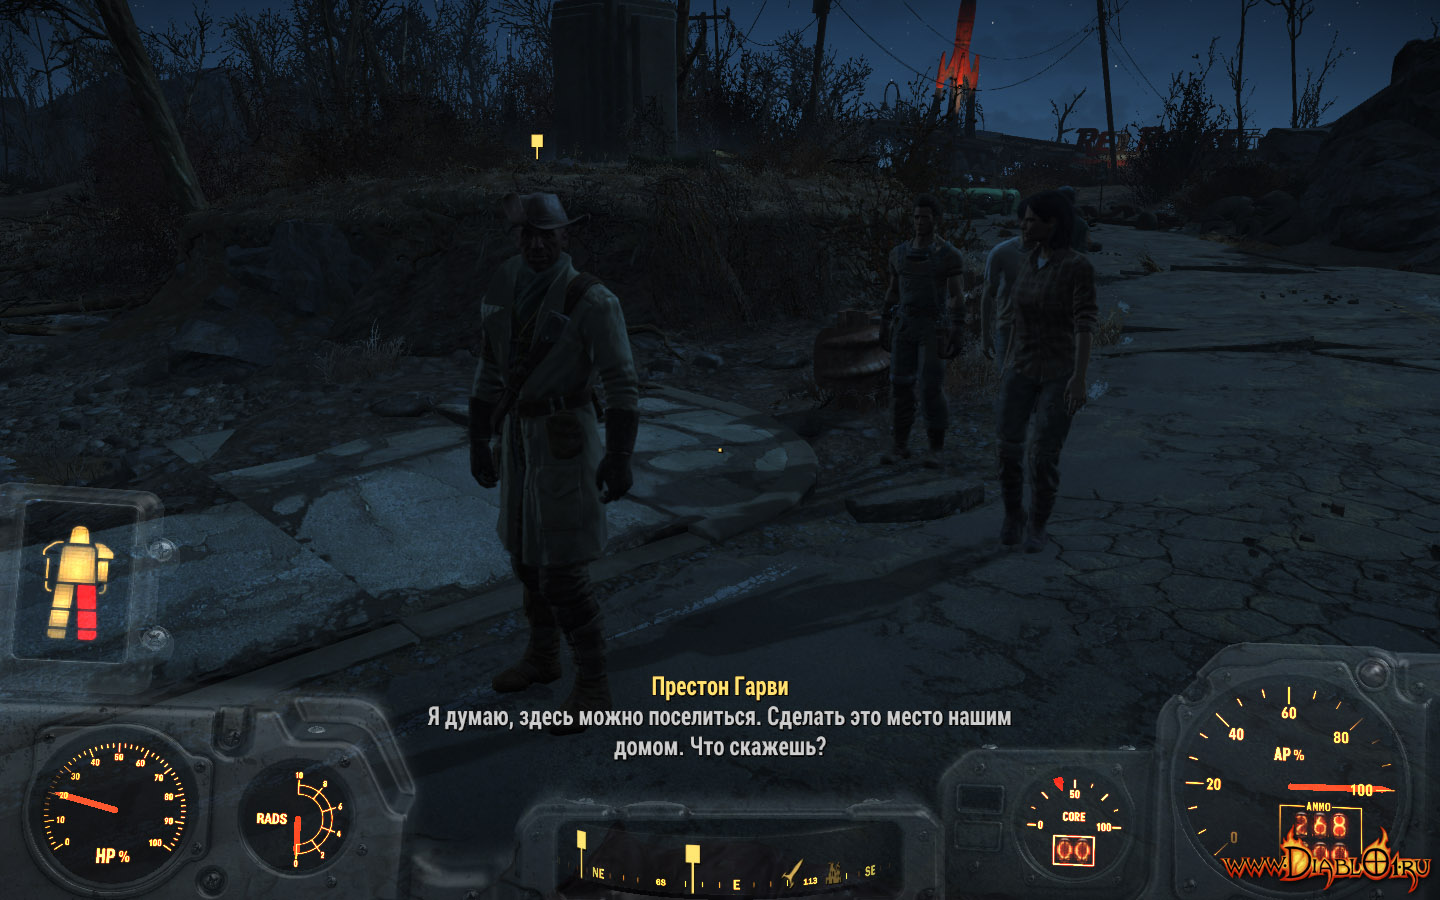 Fallout 4 престон гарви нет диалога фото 87